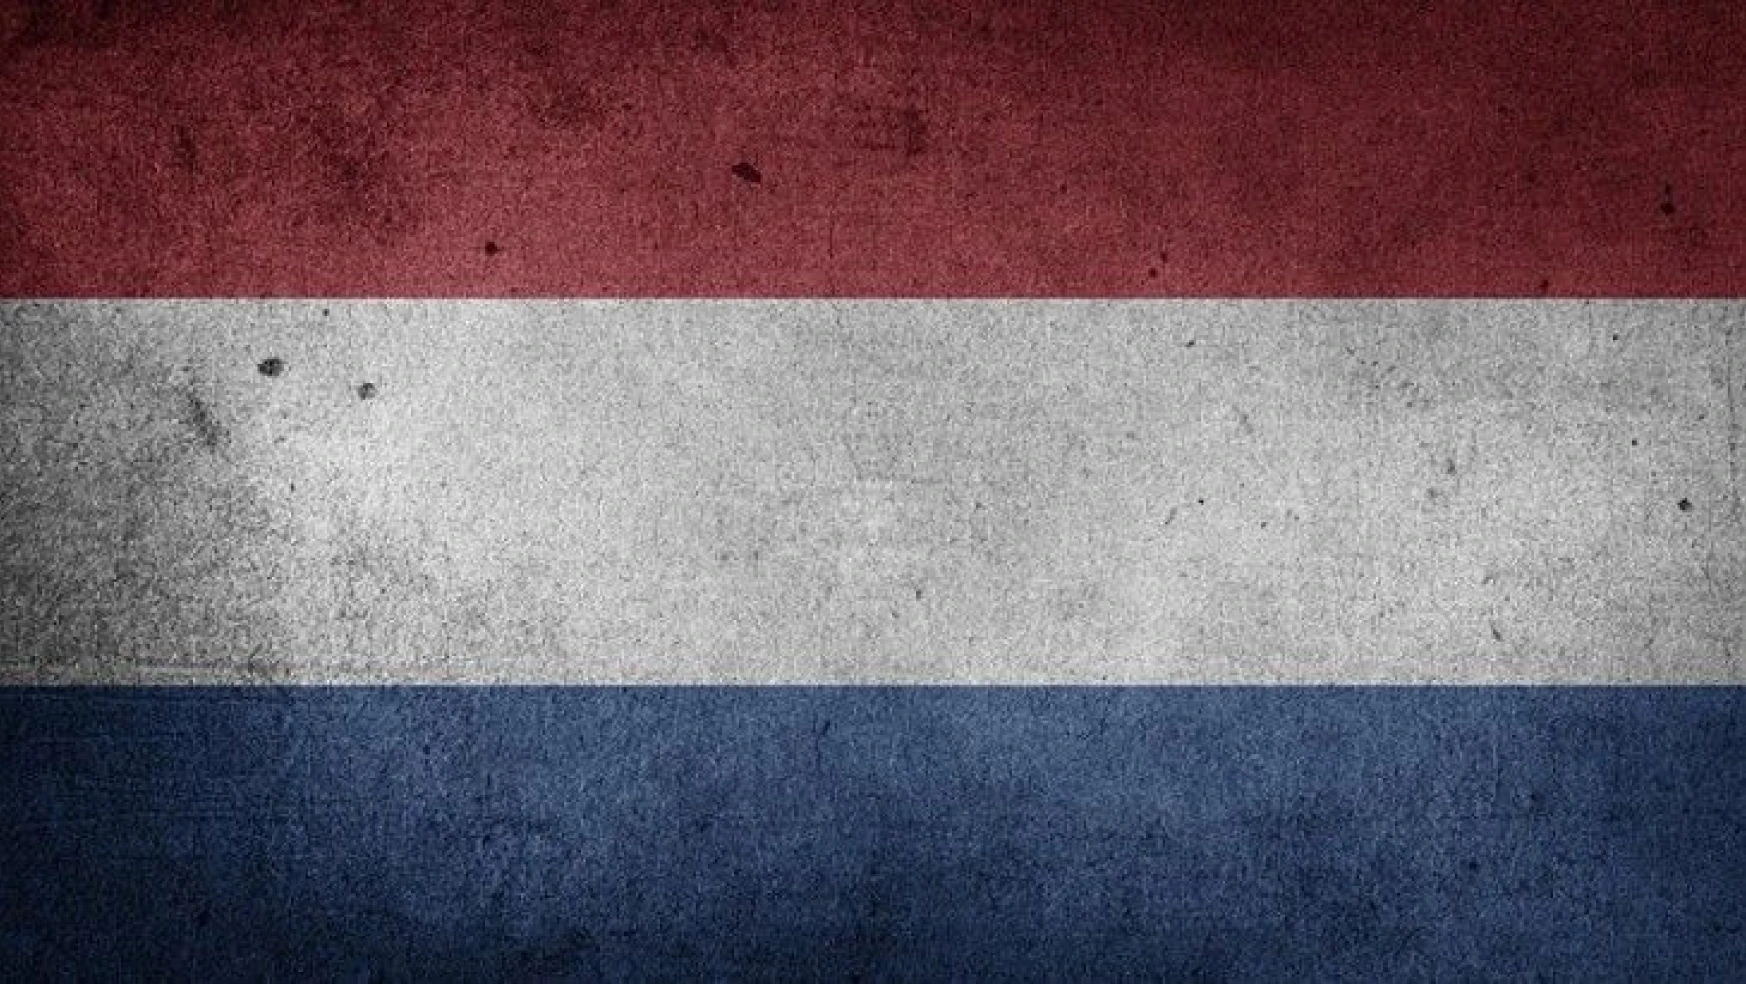 Hollanda göçmenlere işe alımda eşit fırsatı tartışıyor